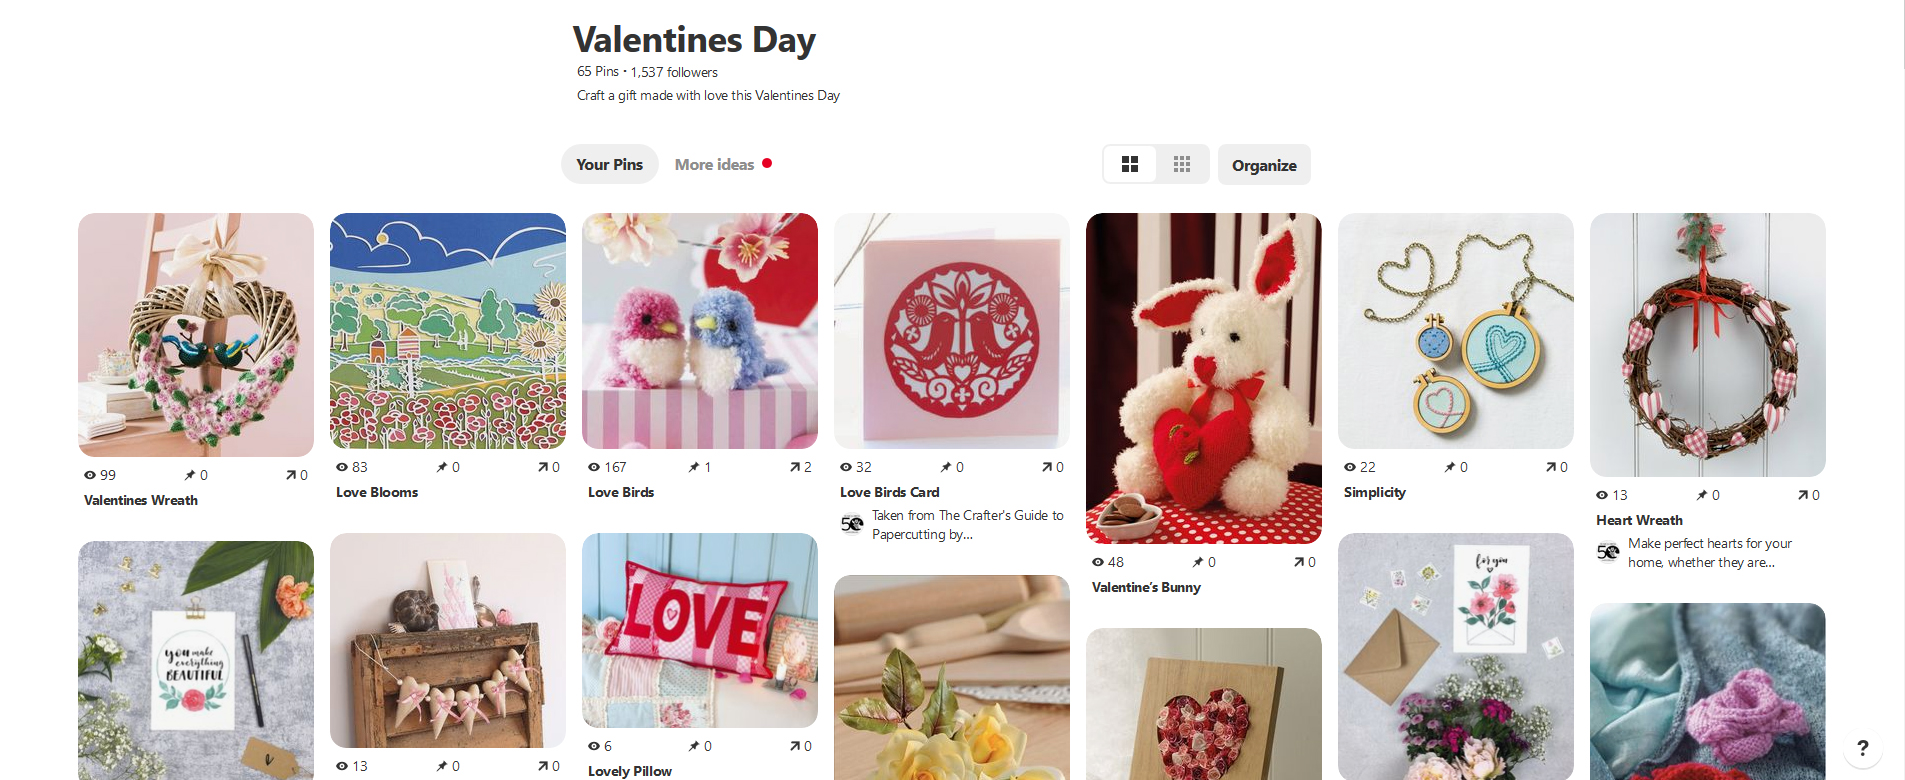 Valentine's Pinterest board